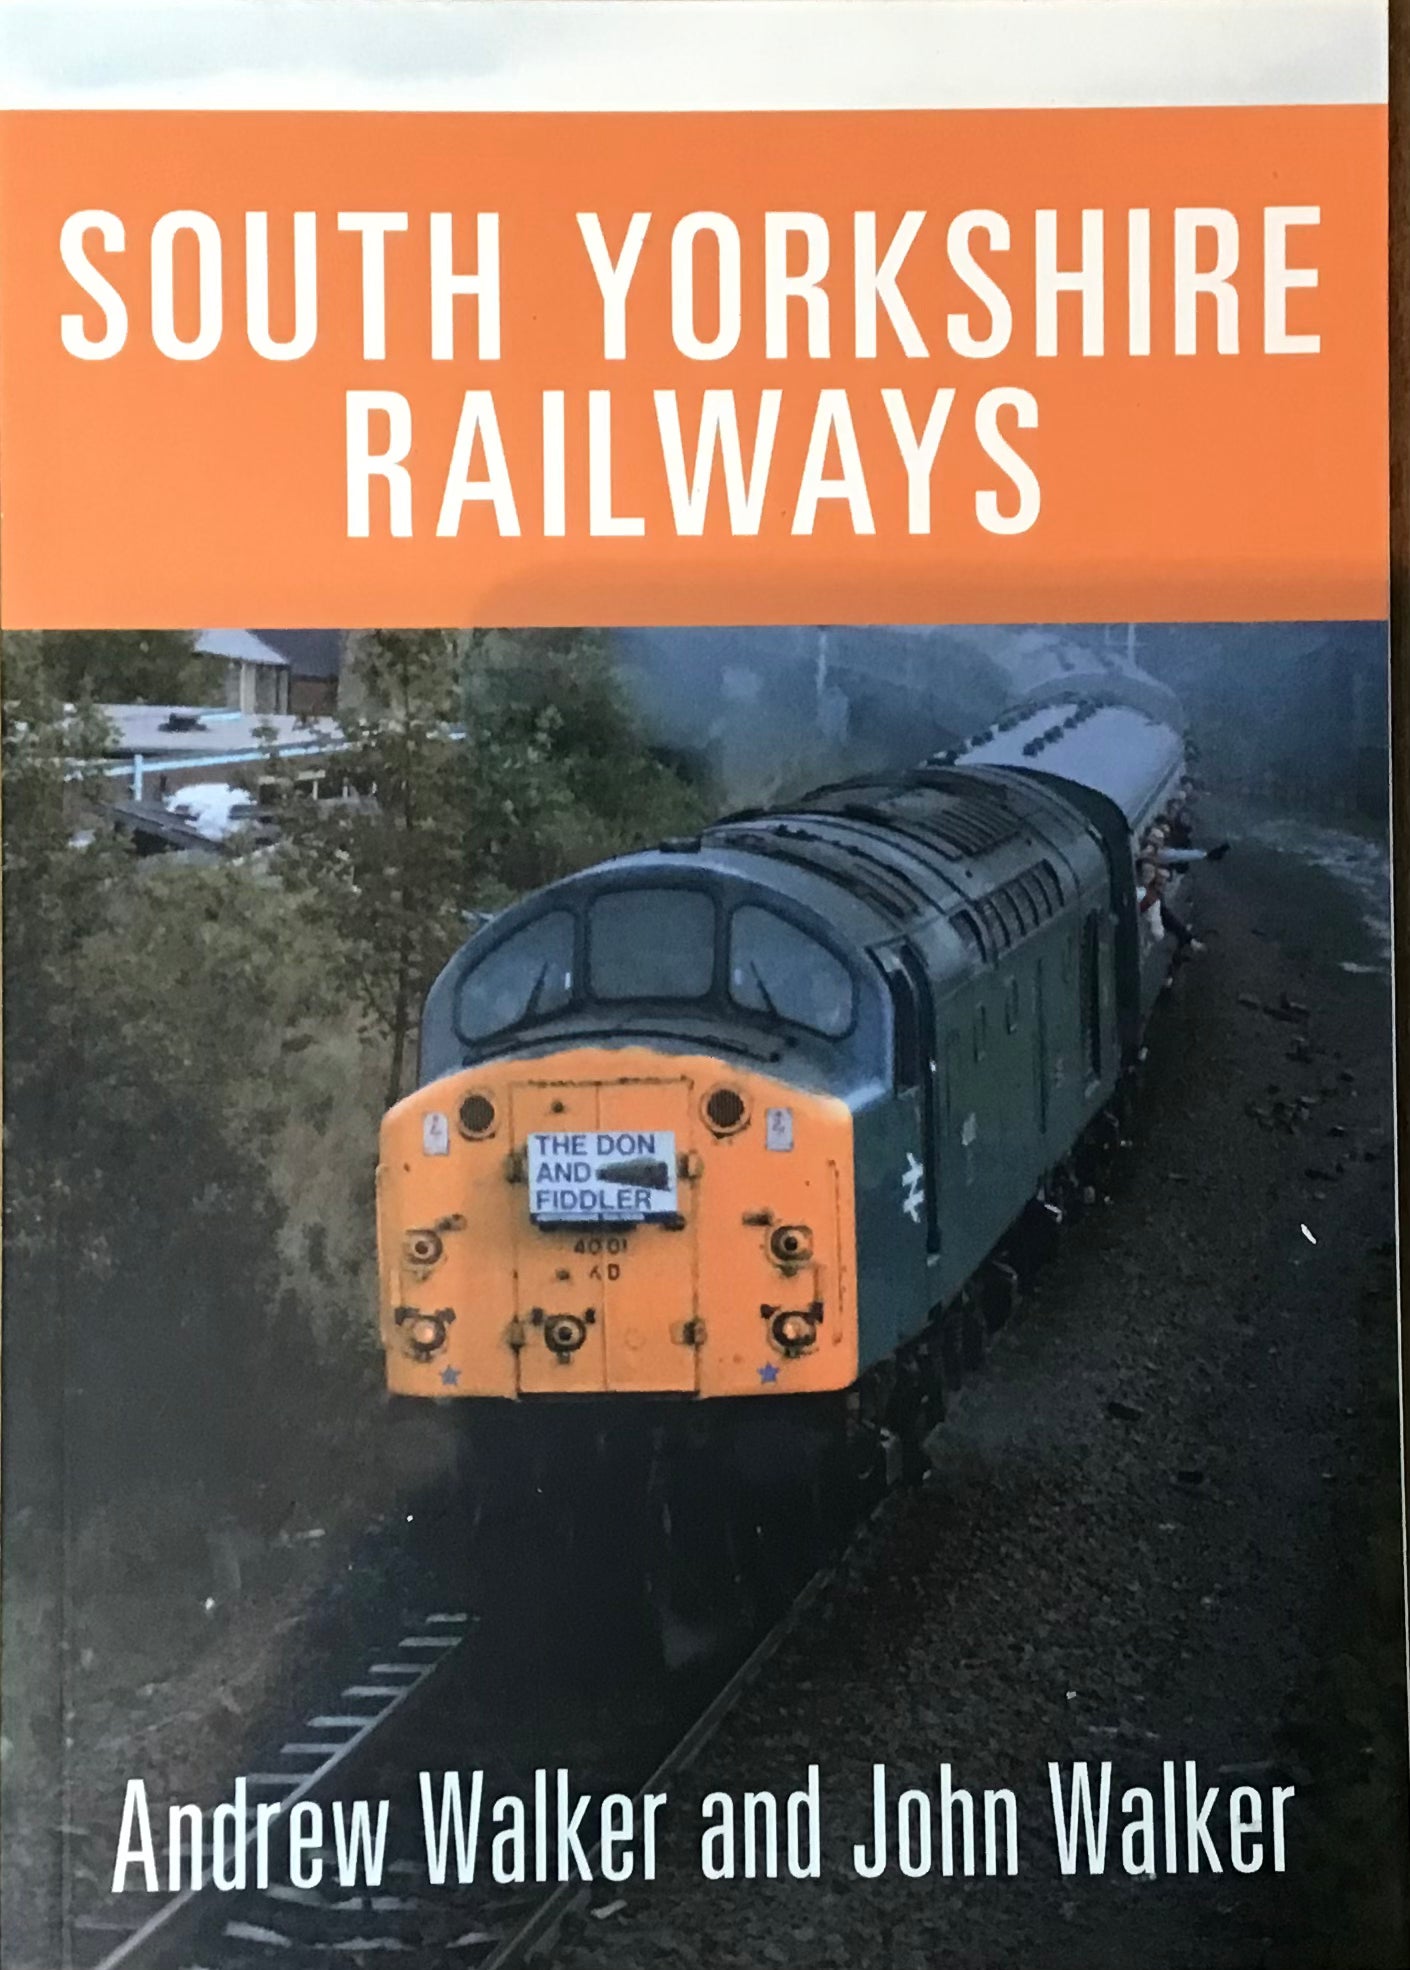 South Yorkshire Railways - Andrew Walker and John Walker - Chester Model Centre